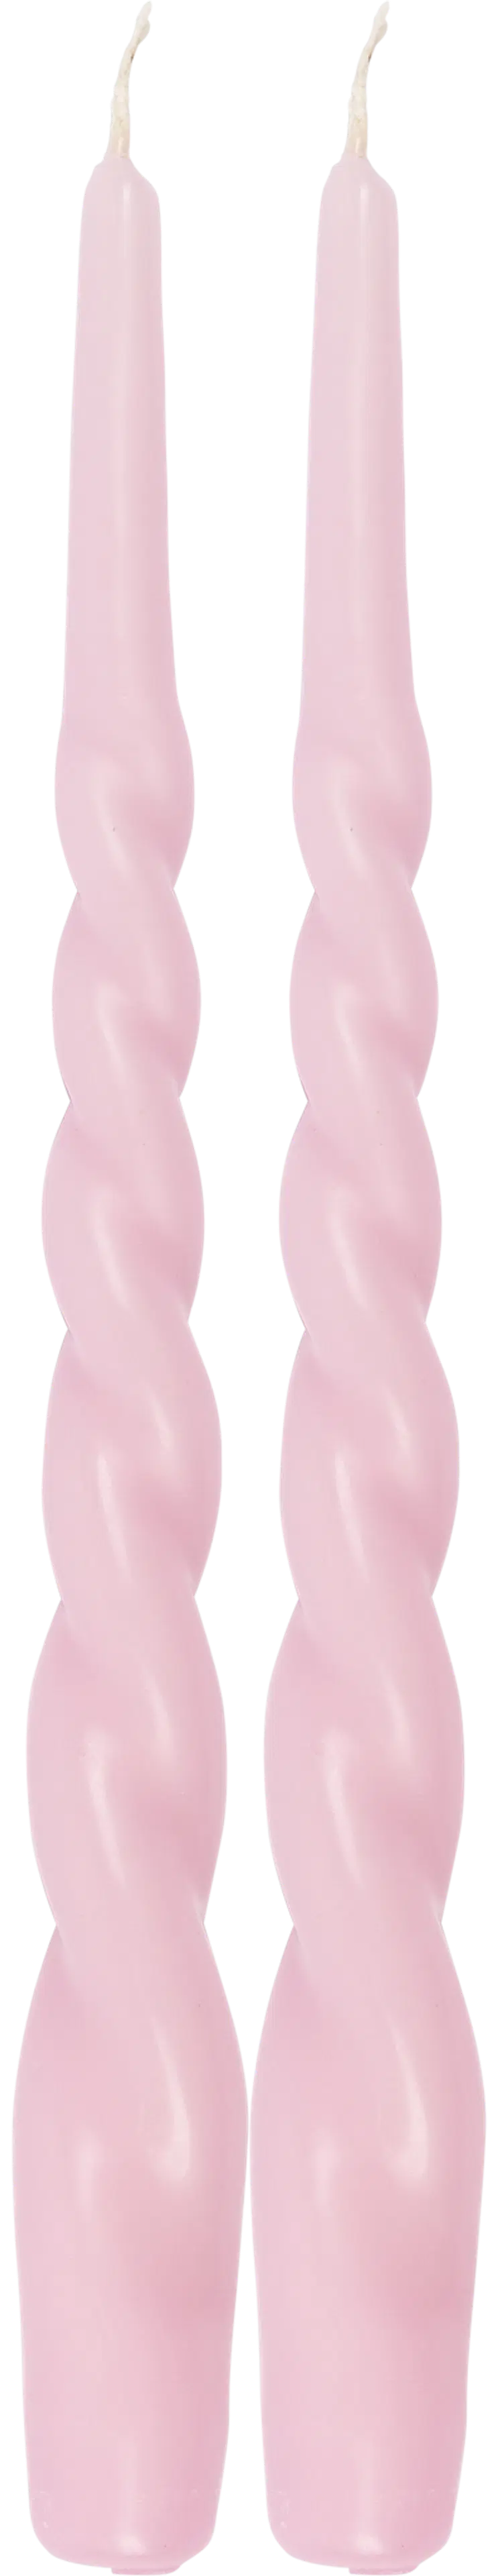 Pentik Kierre kruunukynttilä 28 cm 2 kpl/pkt, vaaleanpunainen